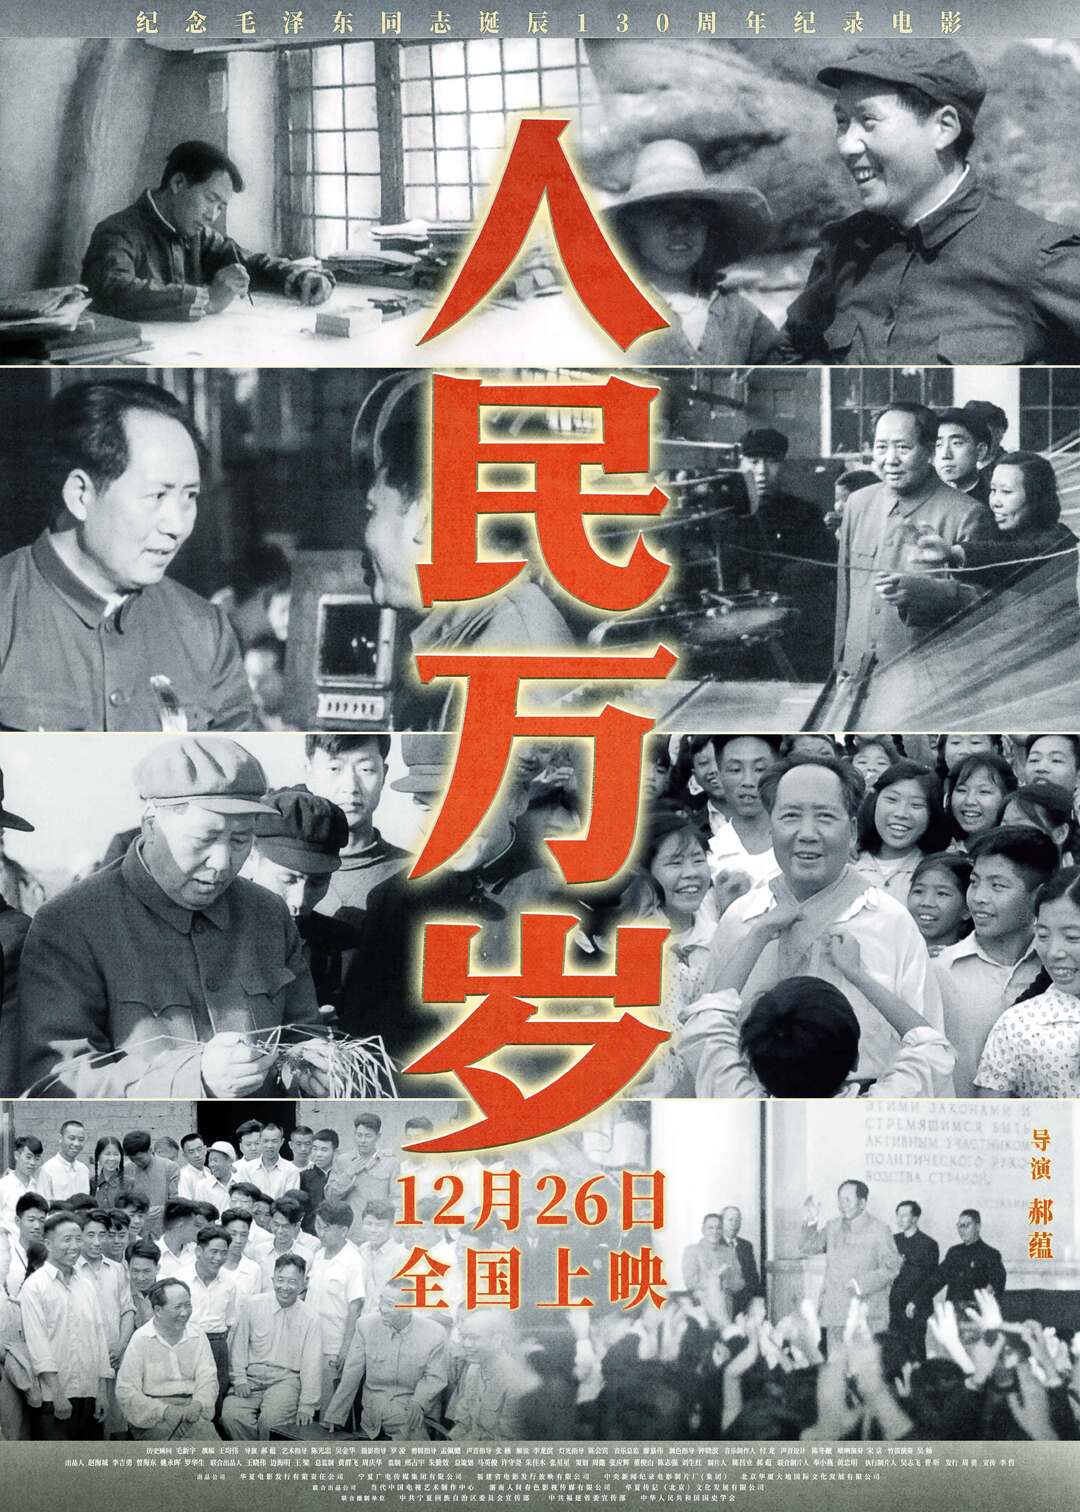 纪录电影《人民万岁》12月26日上映 再现毛泽东与群众的温情互动